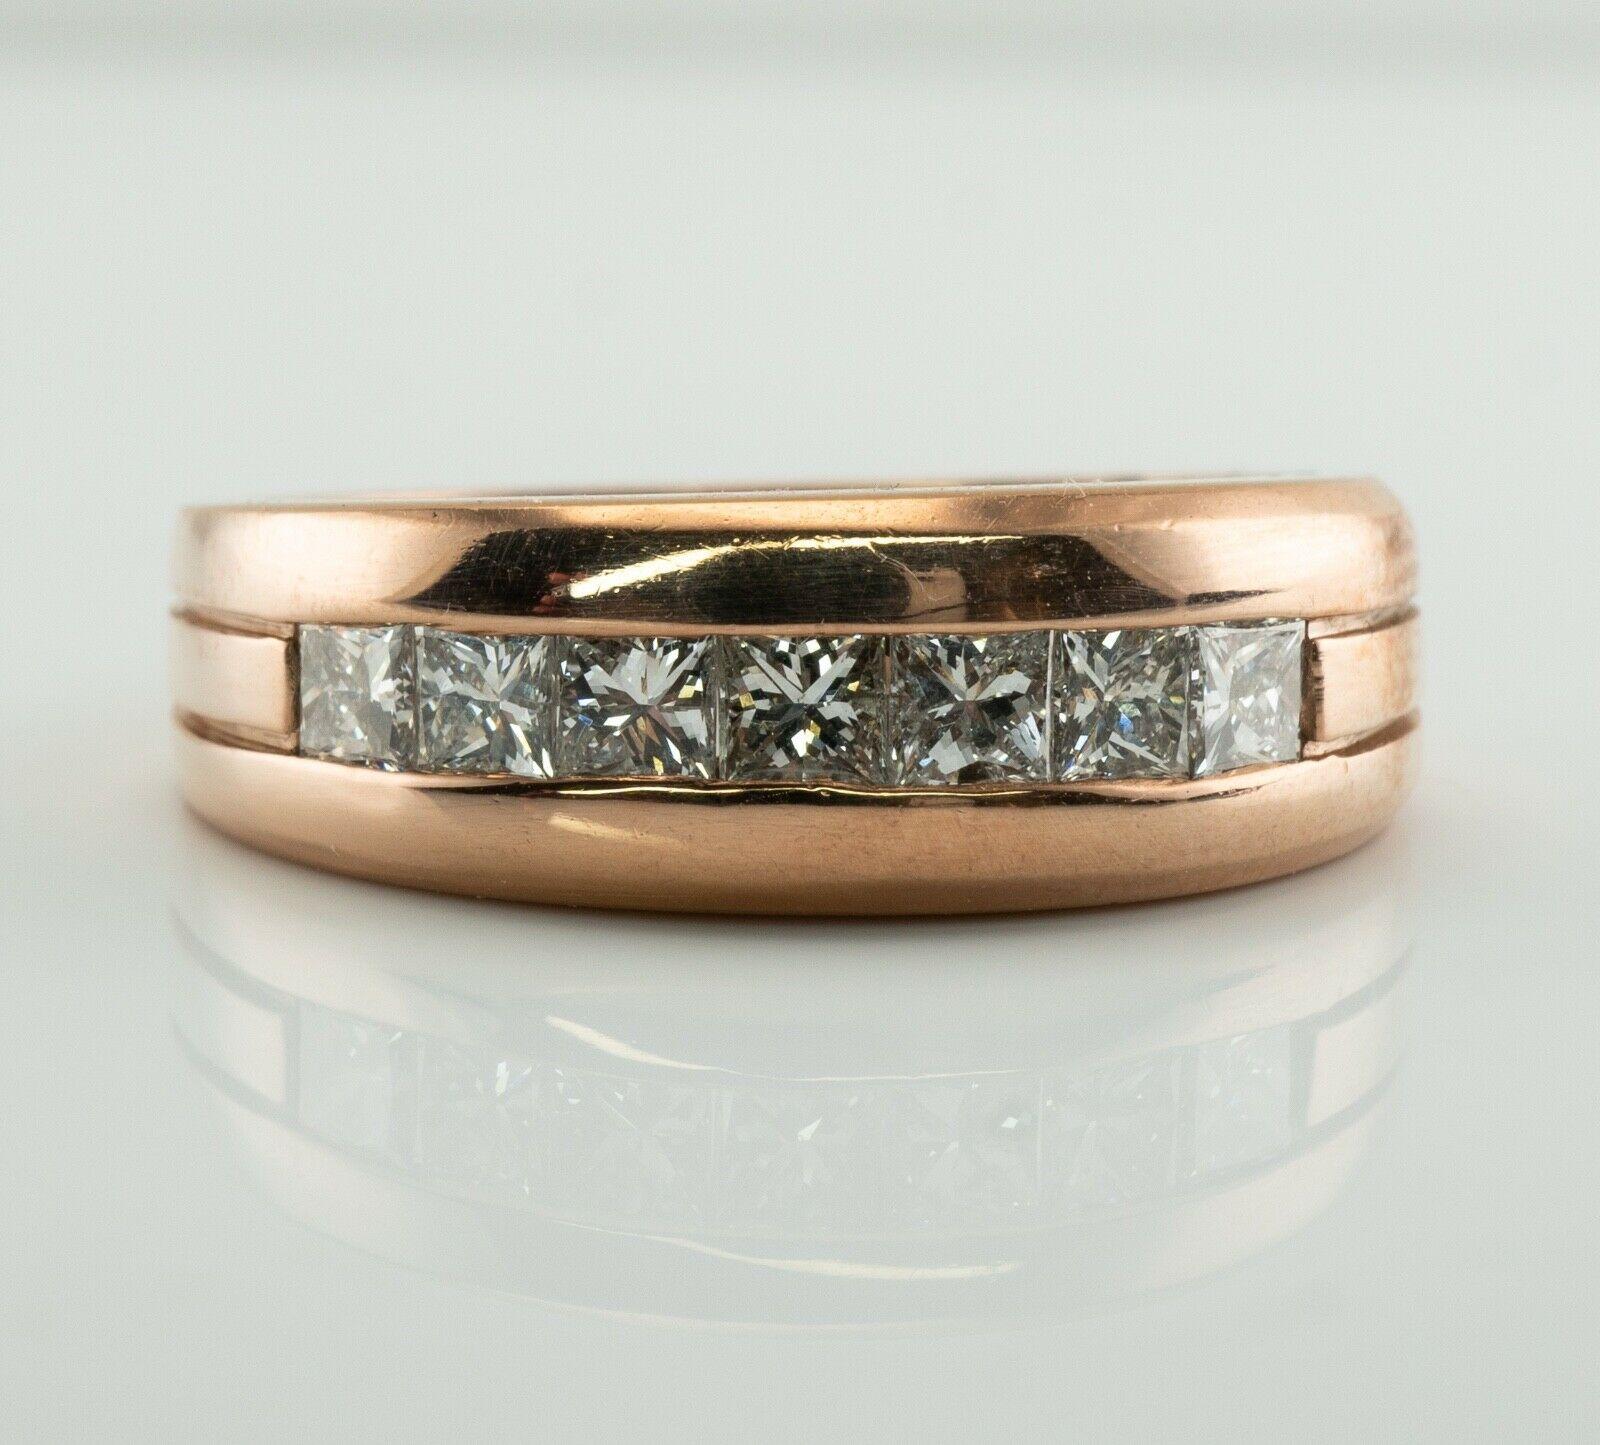 Dieser Vintage-Ring ist aus massivem 18 Karat Roségold gefertigt.
Sieben Diamanten im Prinzessinnenschliff mit insgesamt 1,26 Karat, Reinheit VS2-SI1 und Farbe H.
Die Spitze des Rings misst vertikal 6.5 mm.
Größe 8,5 (größengerecht). 
Der Ring wiegt